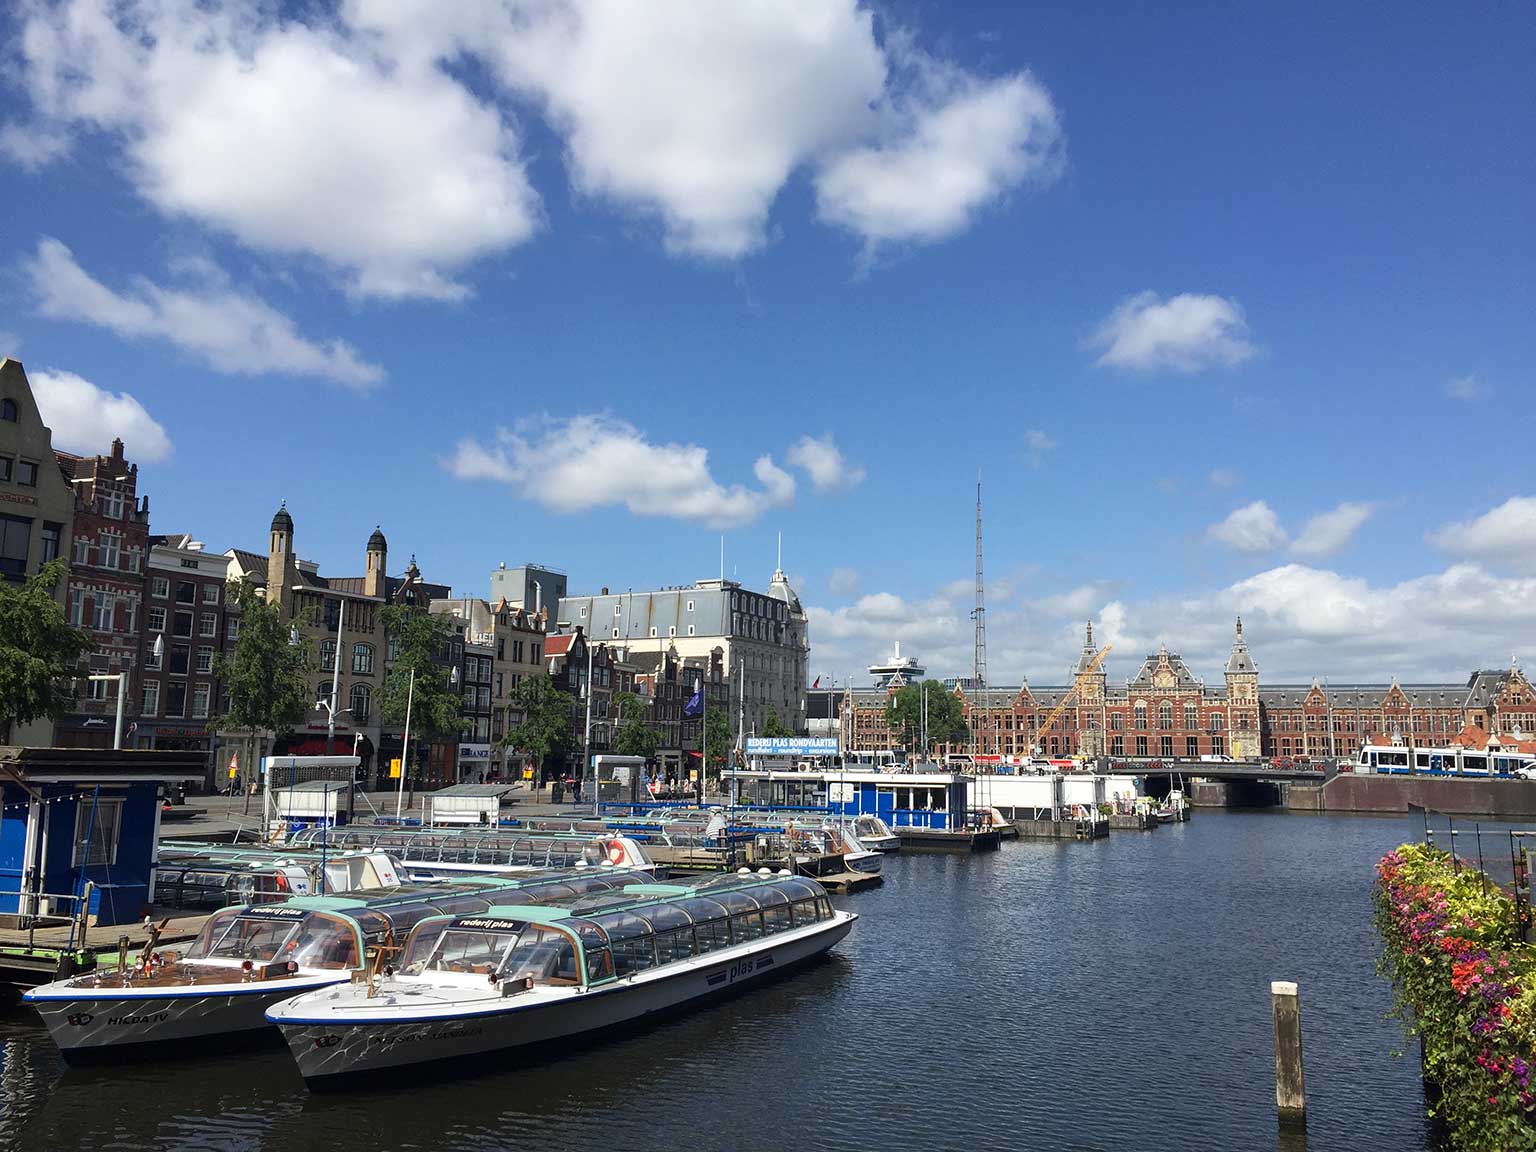 Het natte Damrak, Amsterdam, vanaf Oudebrugsteeg richting Centraal Station, met rondvaartboten